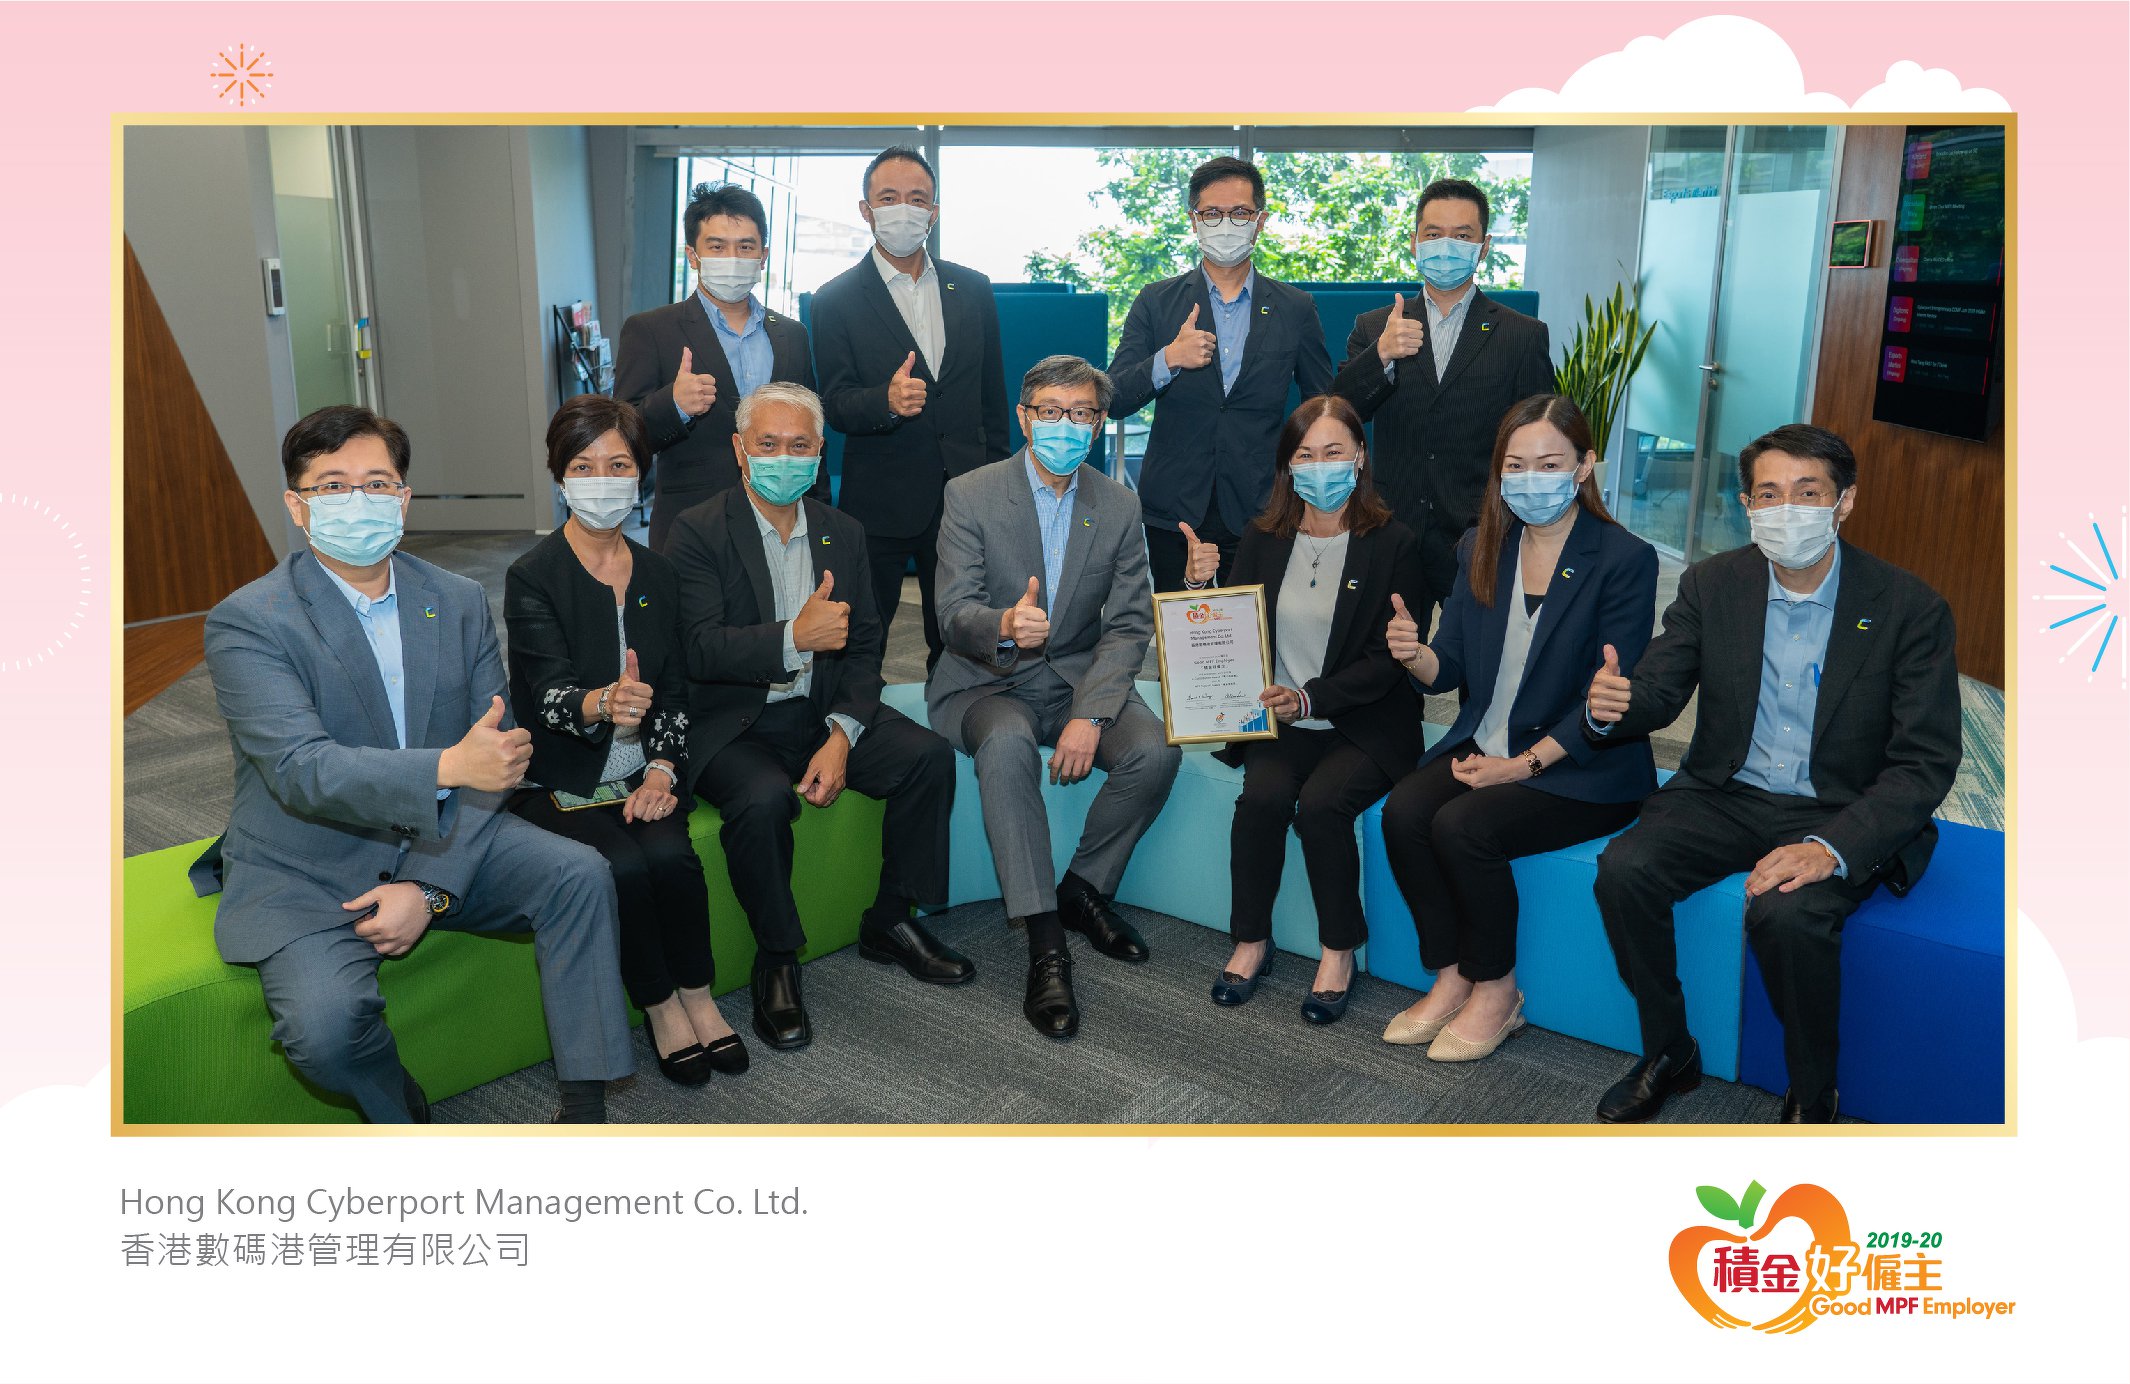 Hong Kong Cyberport Management Co. Ltd. 香港數碼港管理有限公司